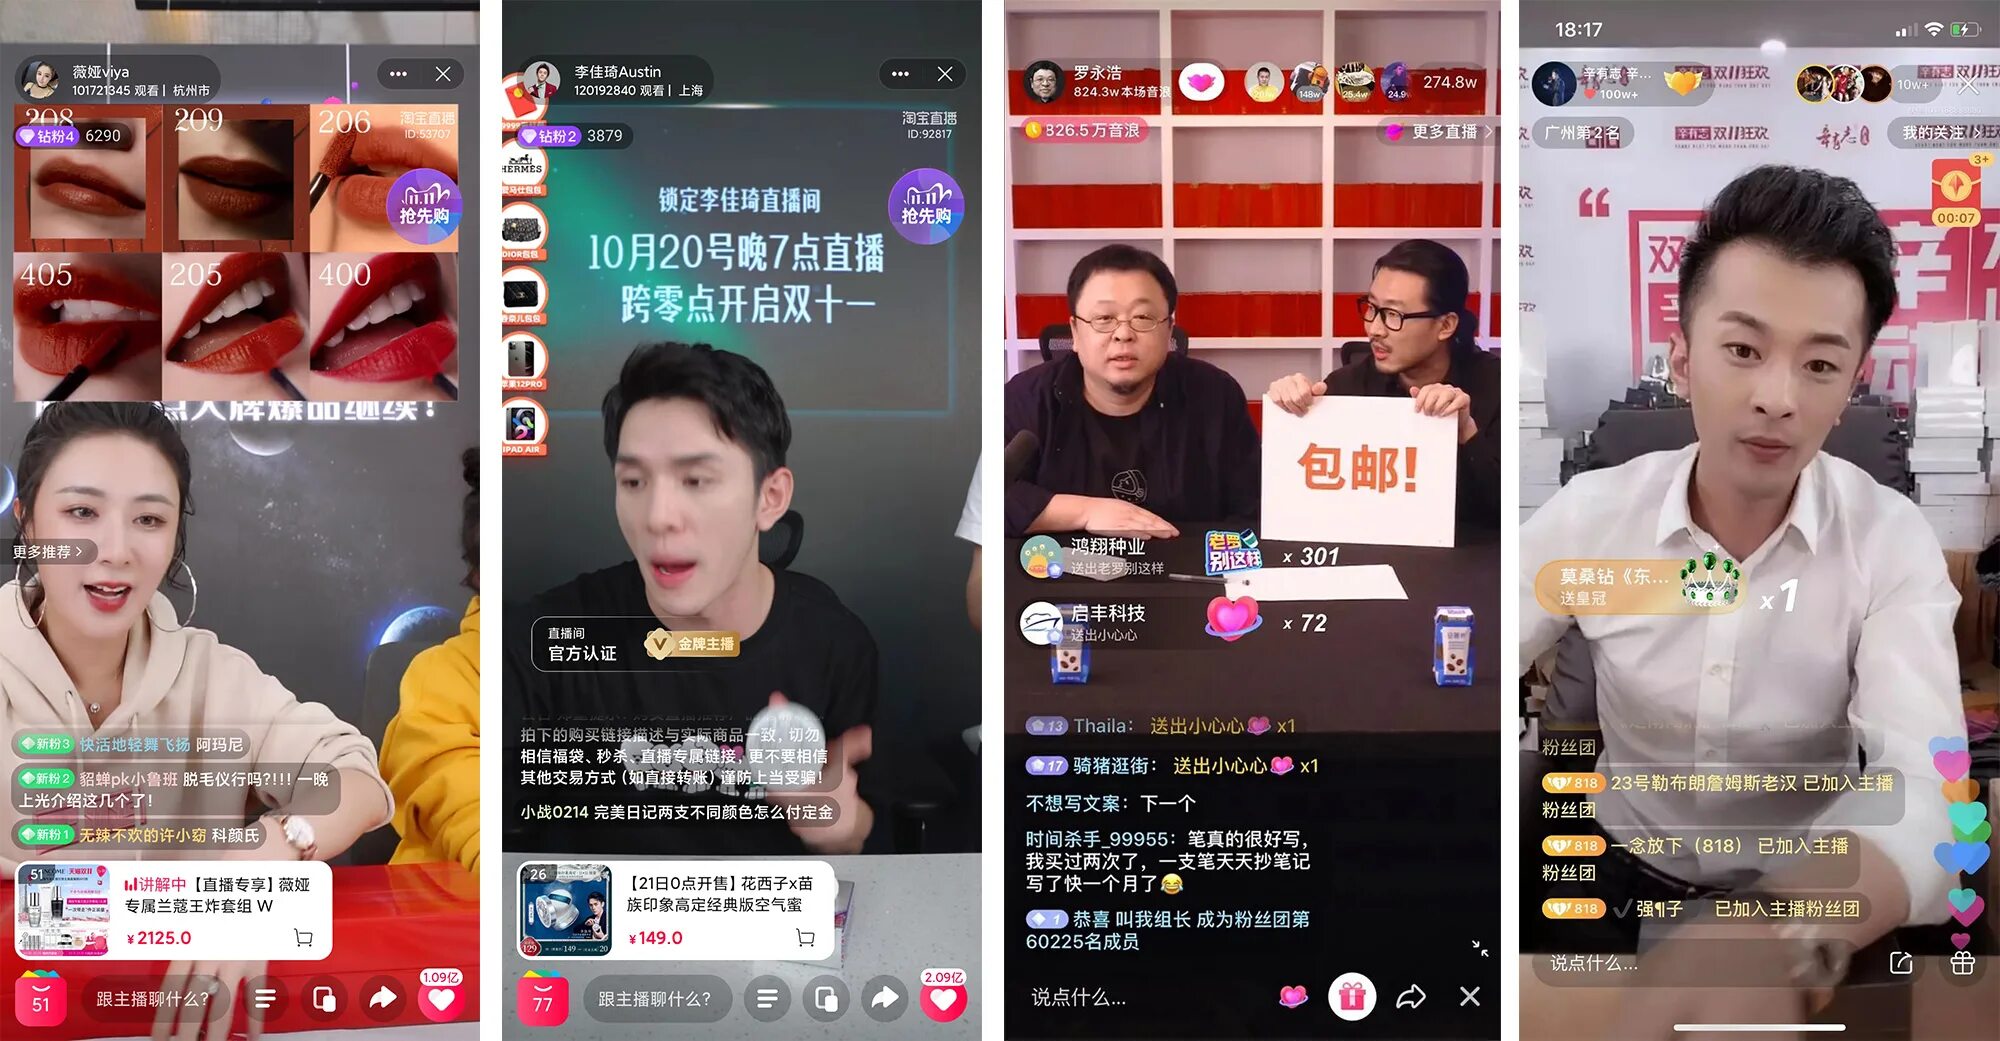 Live stream record. Китайский Live стриминг. Стримы в Китае. Китайские блоггеры. Стримеры в Китае.